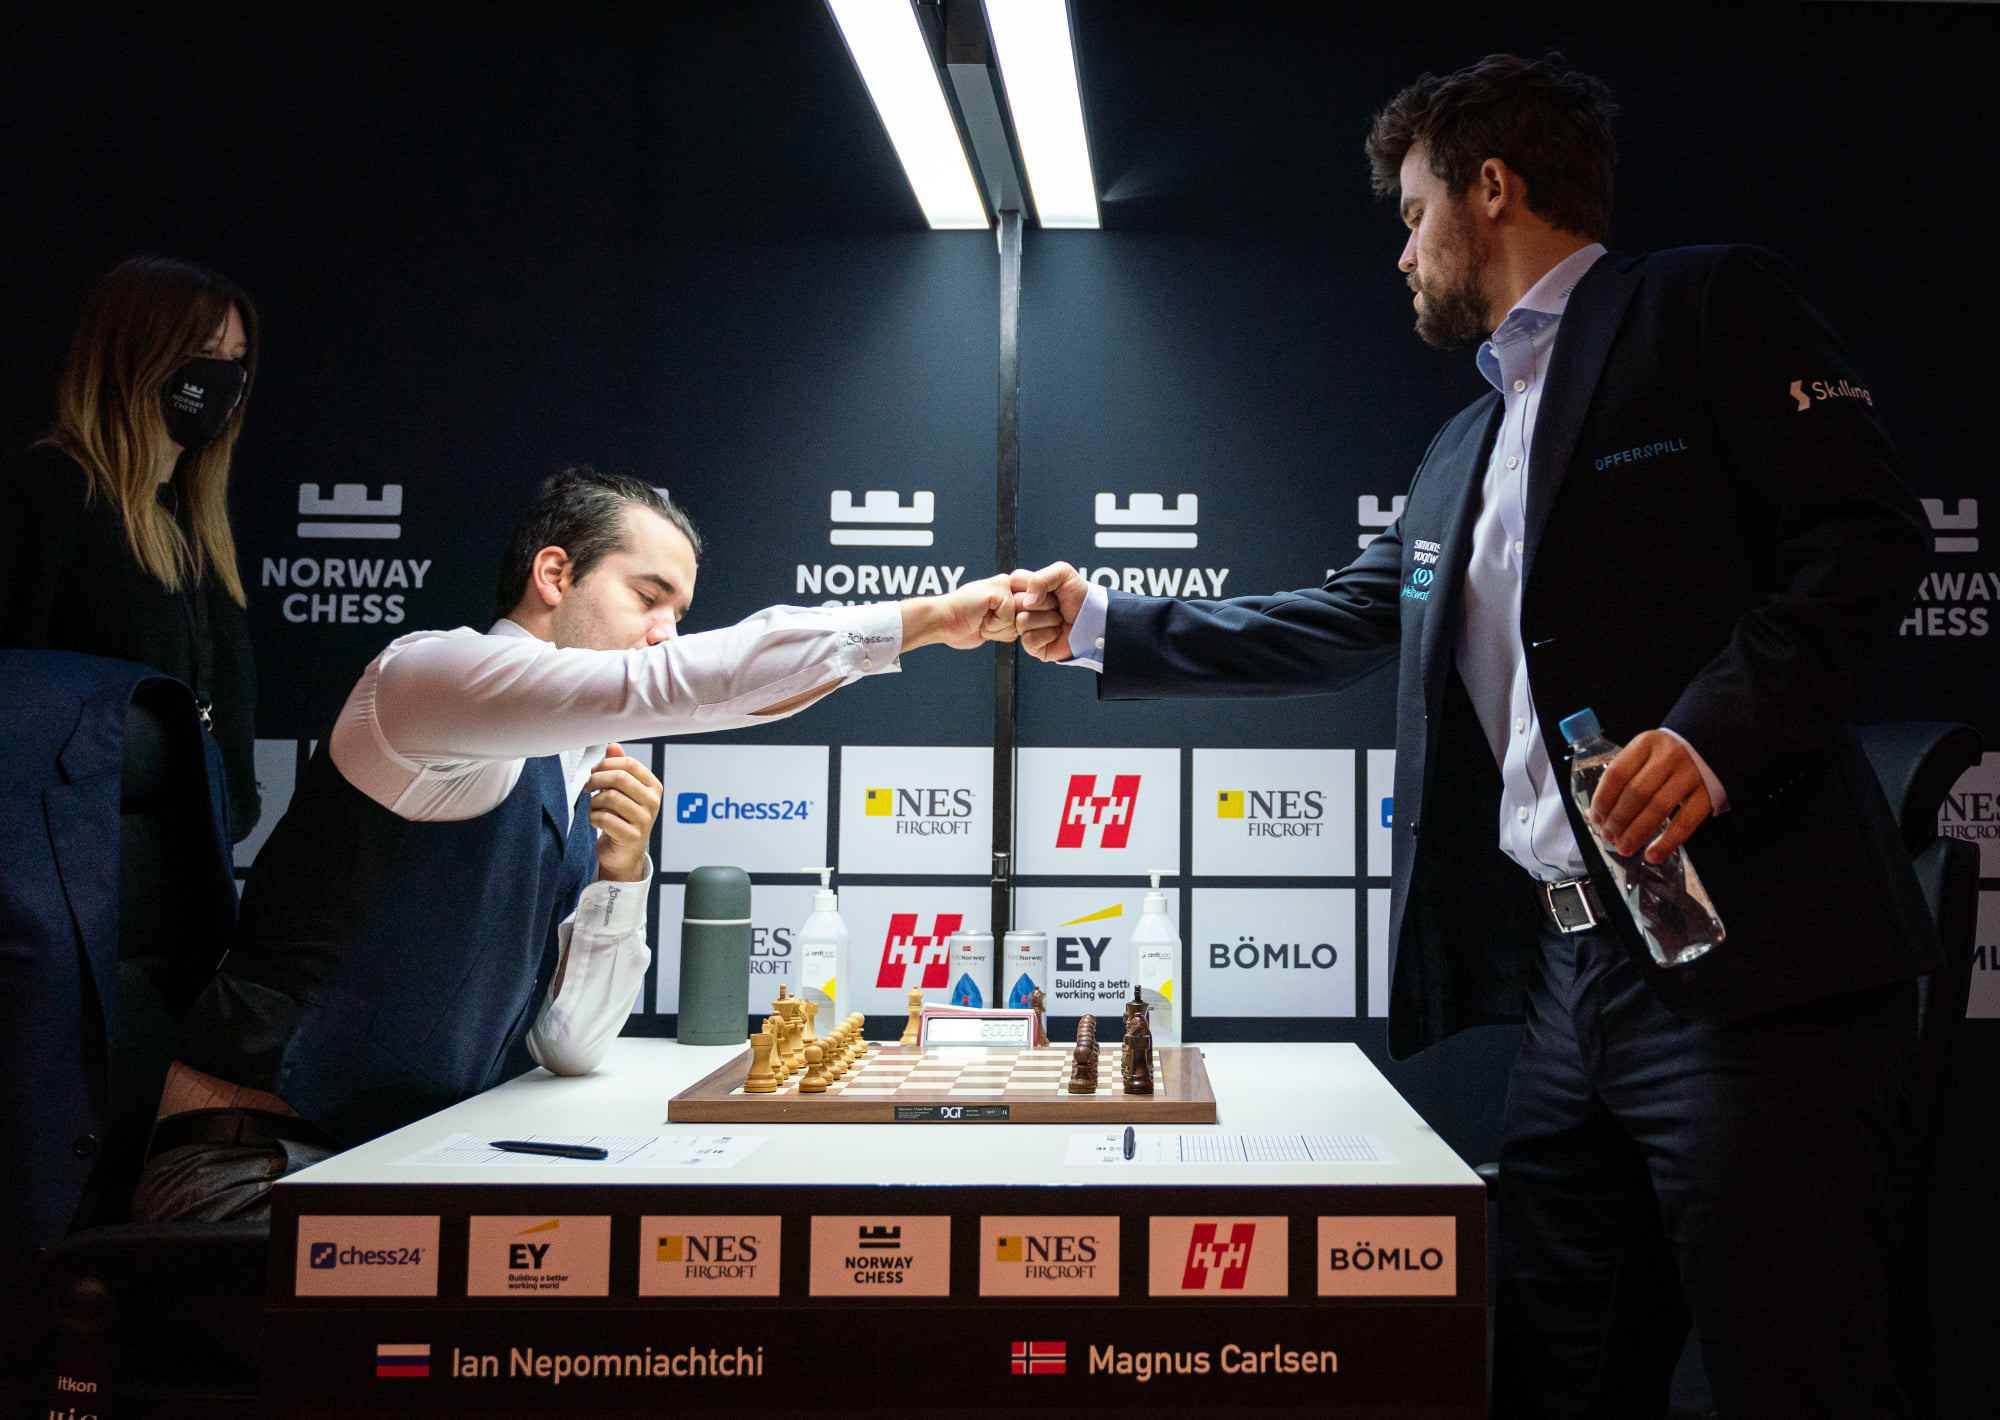 Матч претендентов. Magnus Carlsen vs Ian Nepomniachtchi. Норвежские шахматы. Norway Chess.